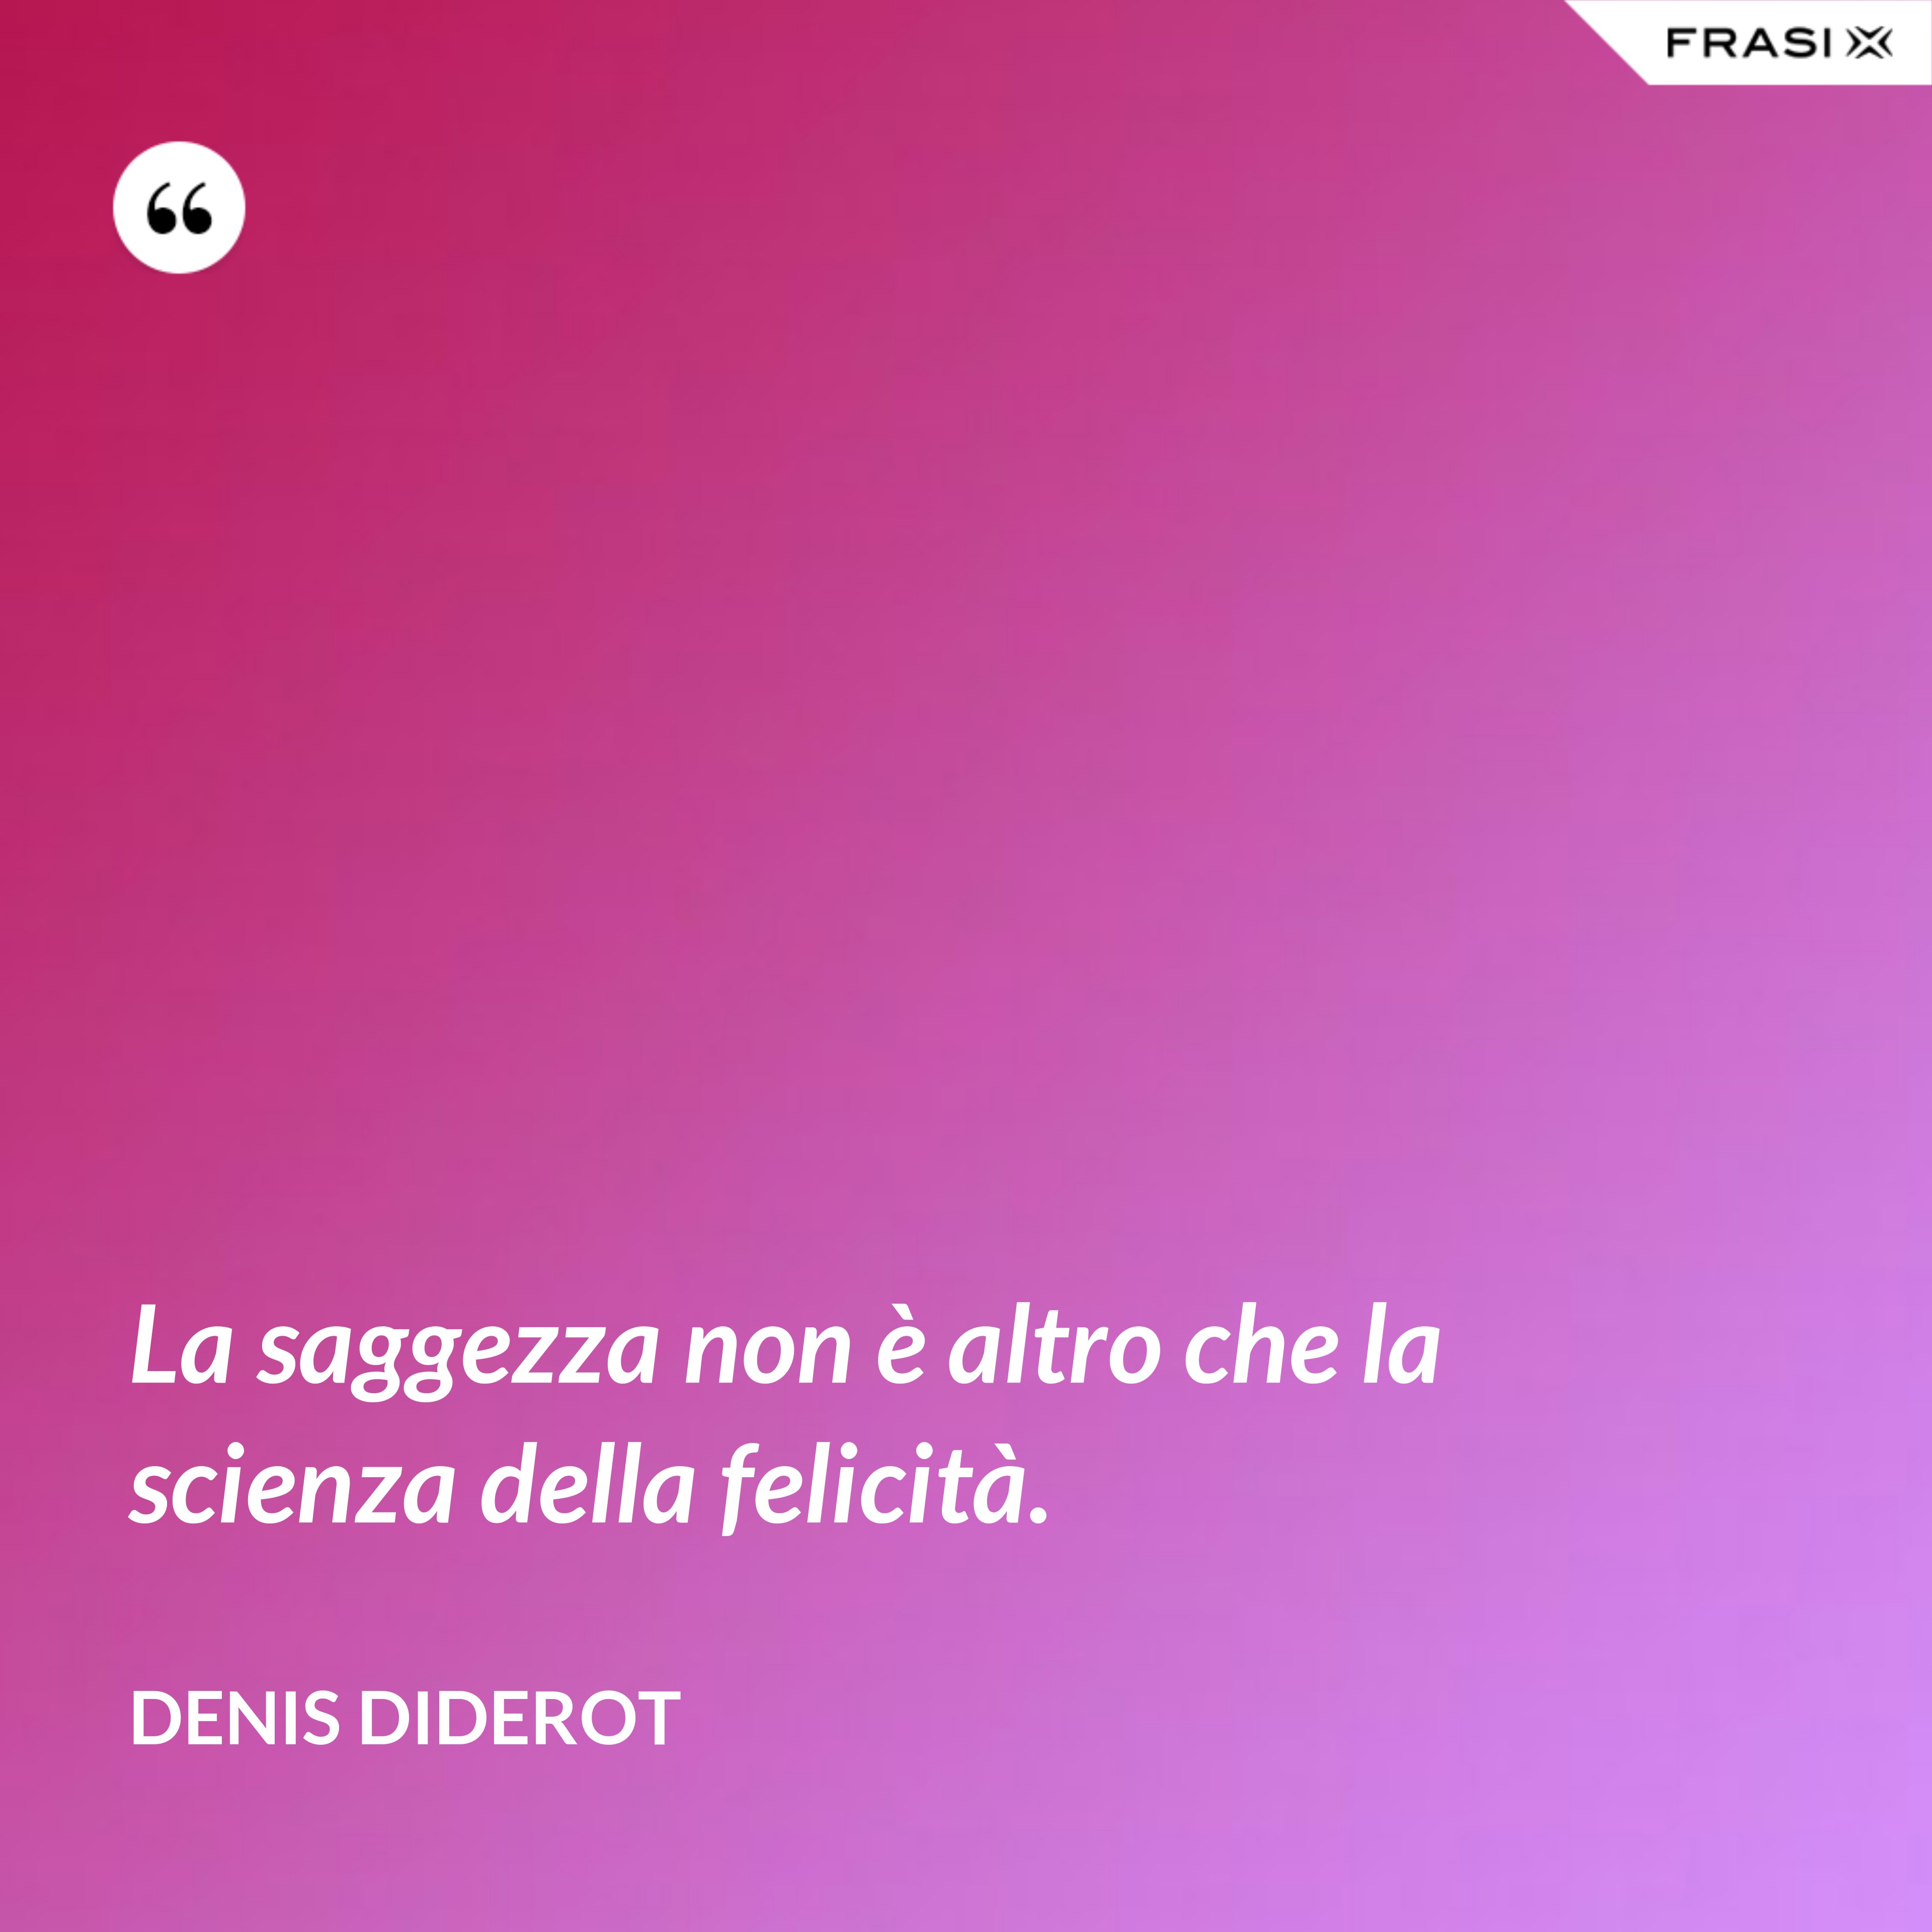 La saggezza non è altro che la scienza della felicità. - Denis Diderot